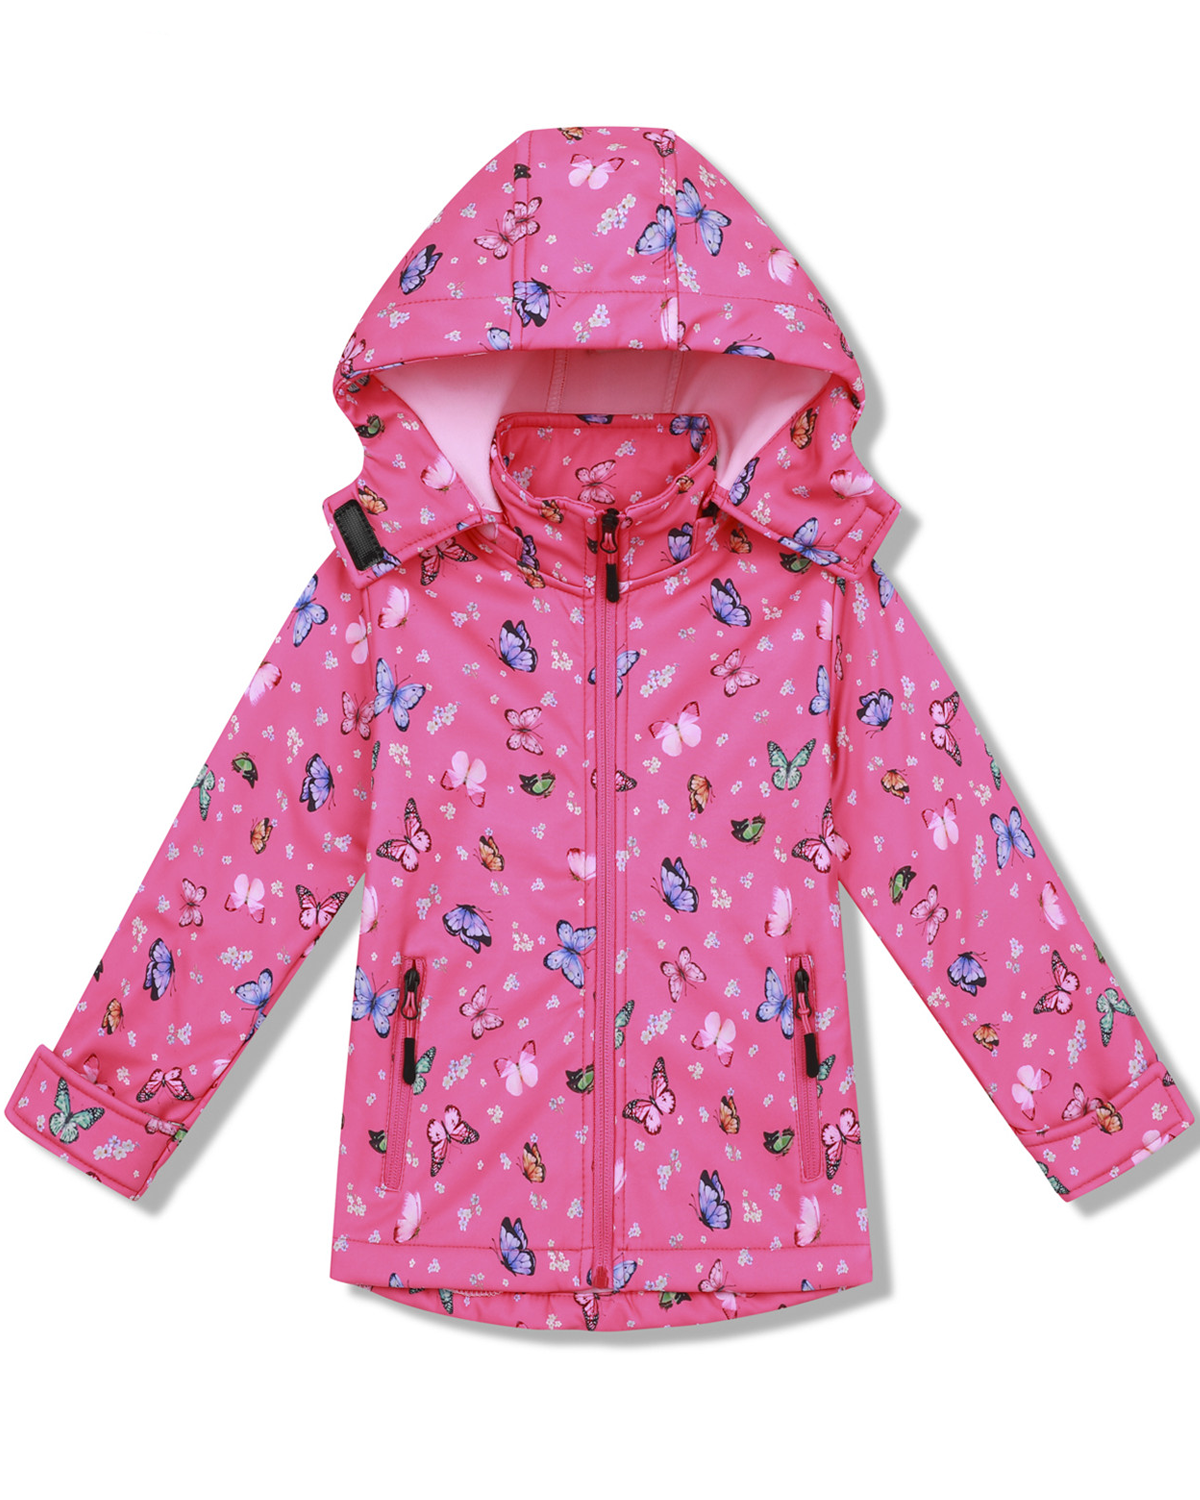 Dívčí softshellová bunda, zateplená - KUGO HB8630, růžová Barva: Růžová, Velikost: 98